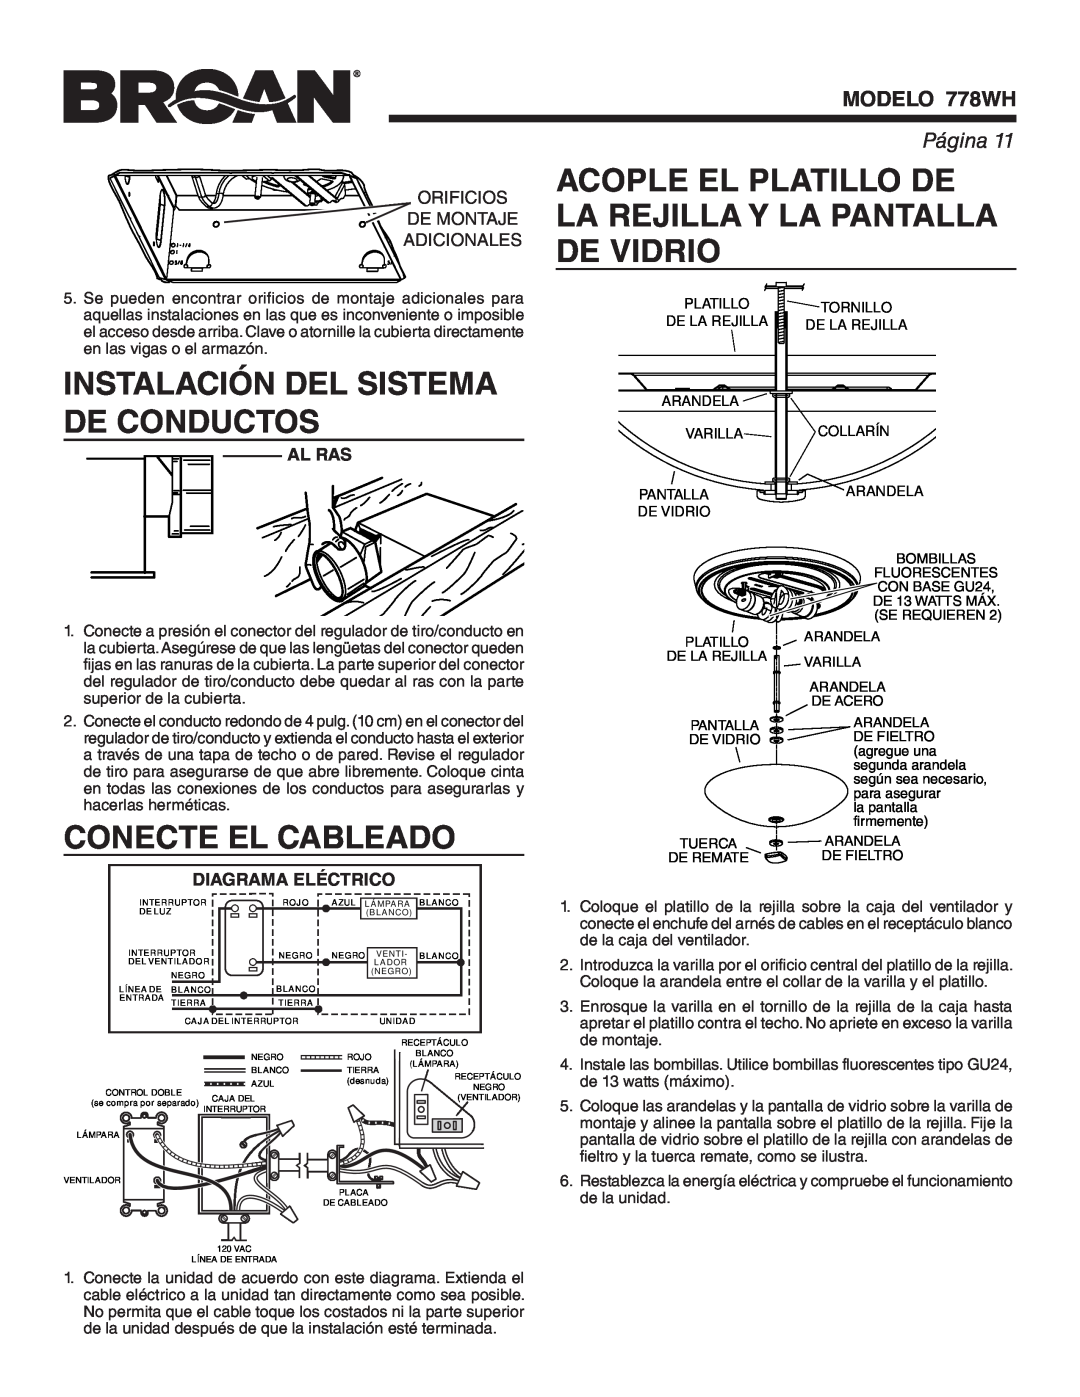 Broan Instalación Del Sistema De Conductos, Conecte El Cableado, Al Ras, Diagrama Eléctrico, MODELO 778WH, Página 